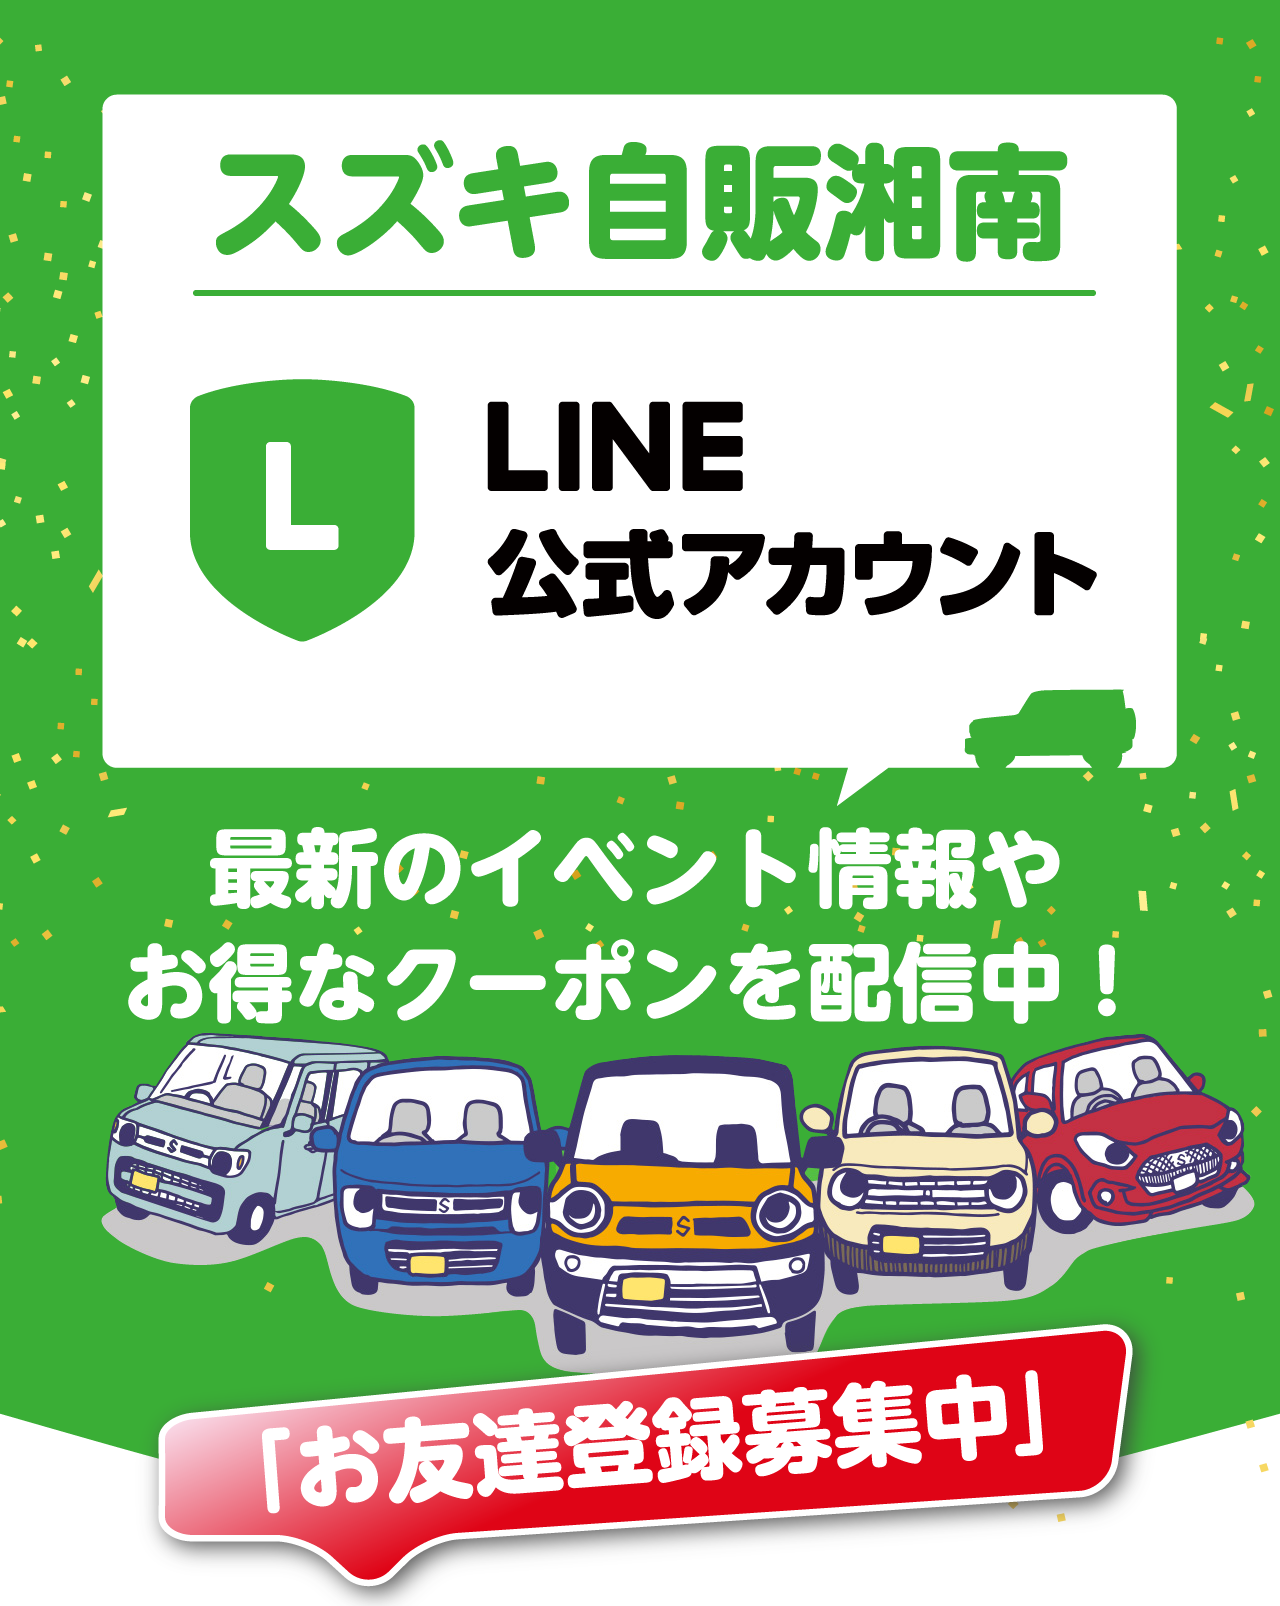 スズキ自販湘南、LINE公式アカウント